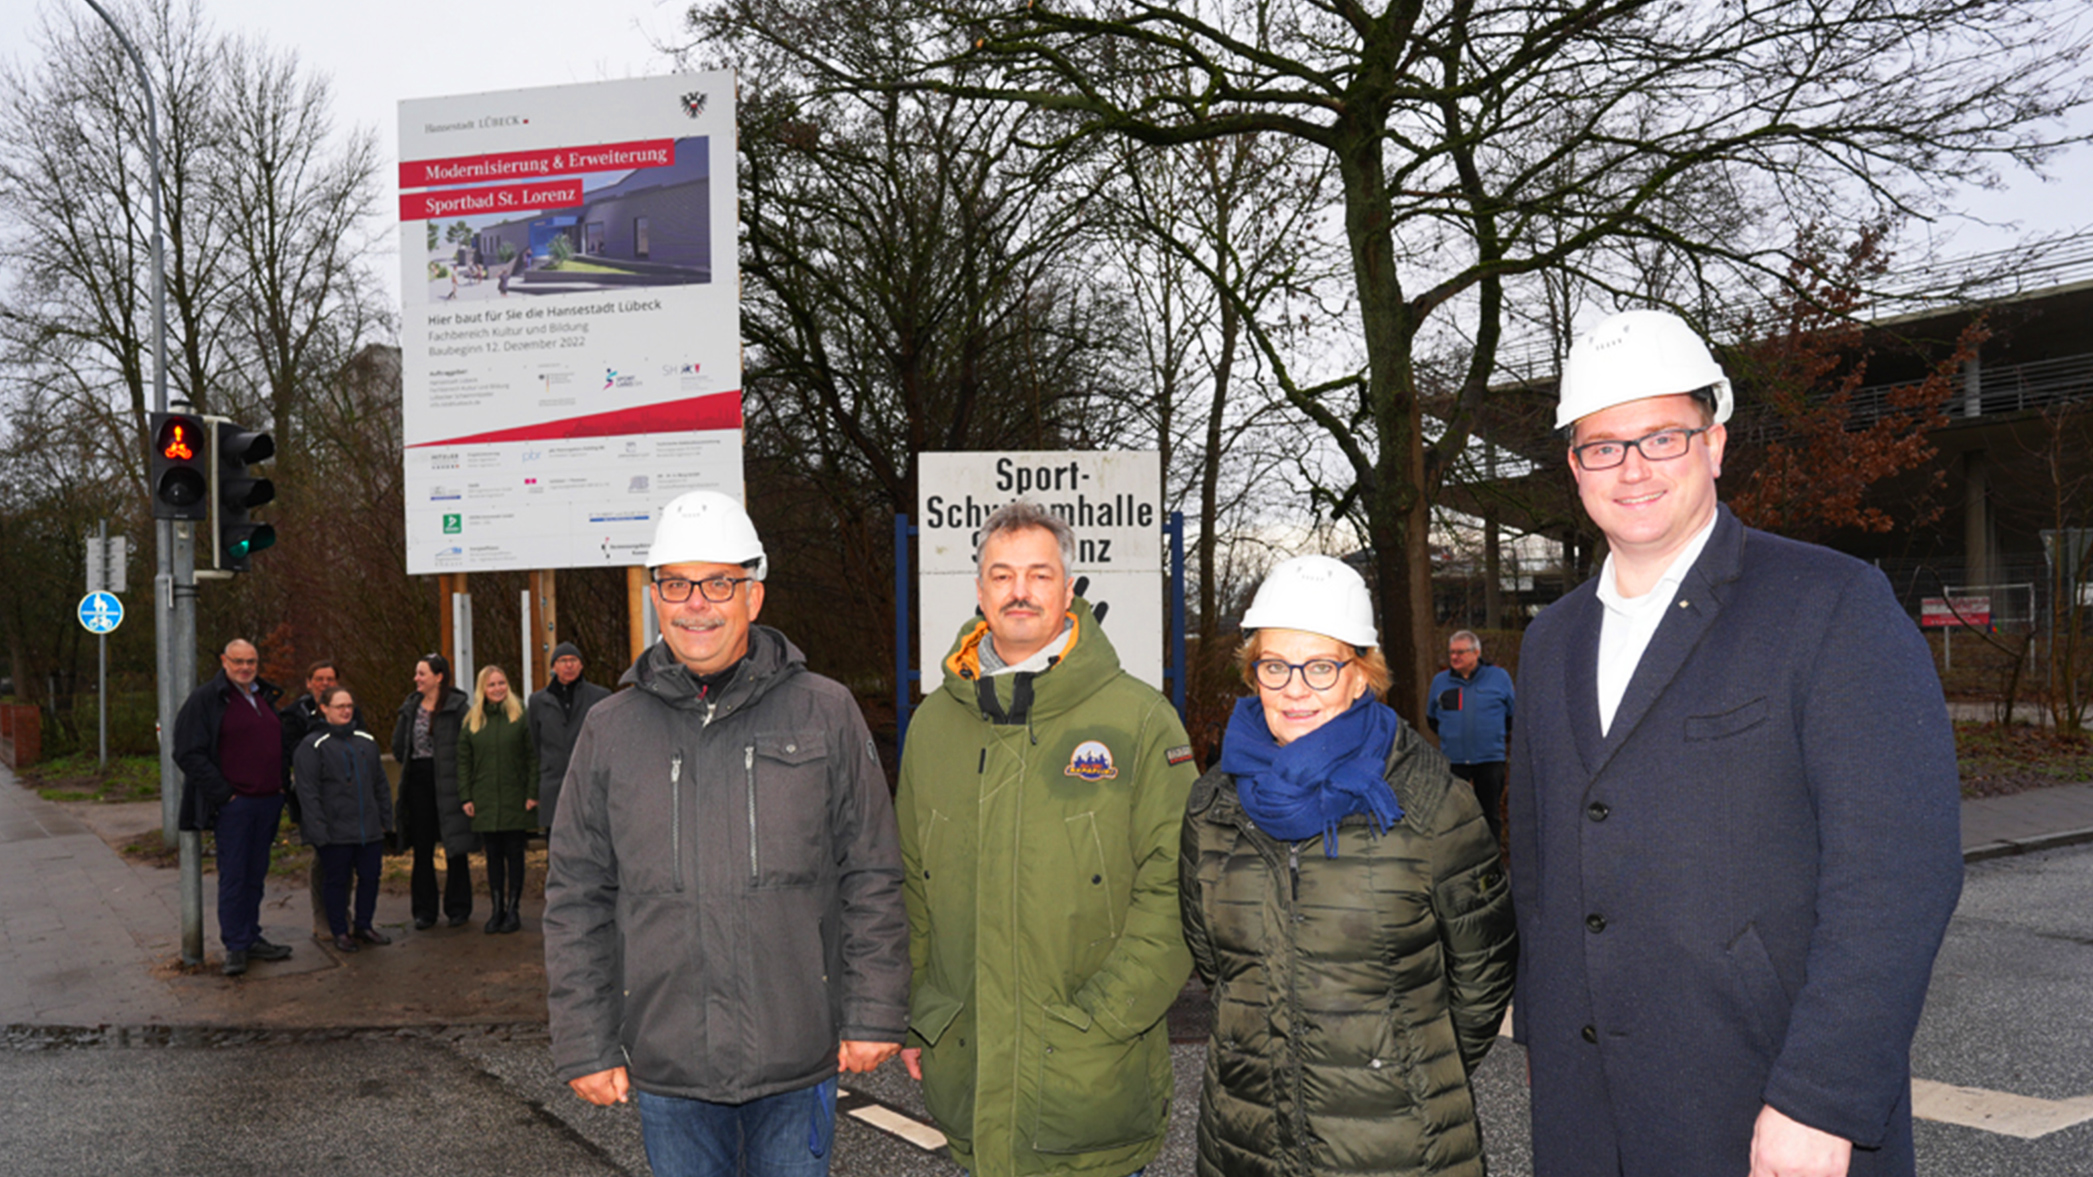 Herr Hoppe, Herr Stöver, Senatorin Frank und Bürgermeister Herr Lindenau stehen vor dem Bauschild.